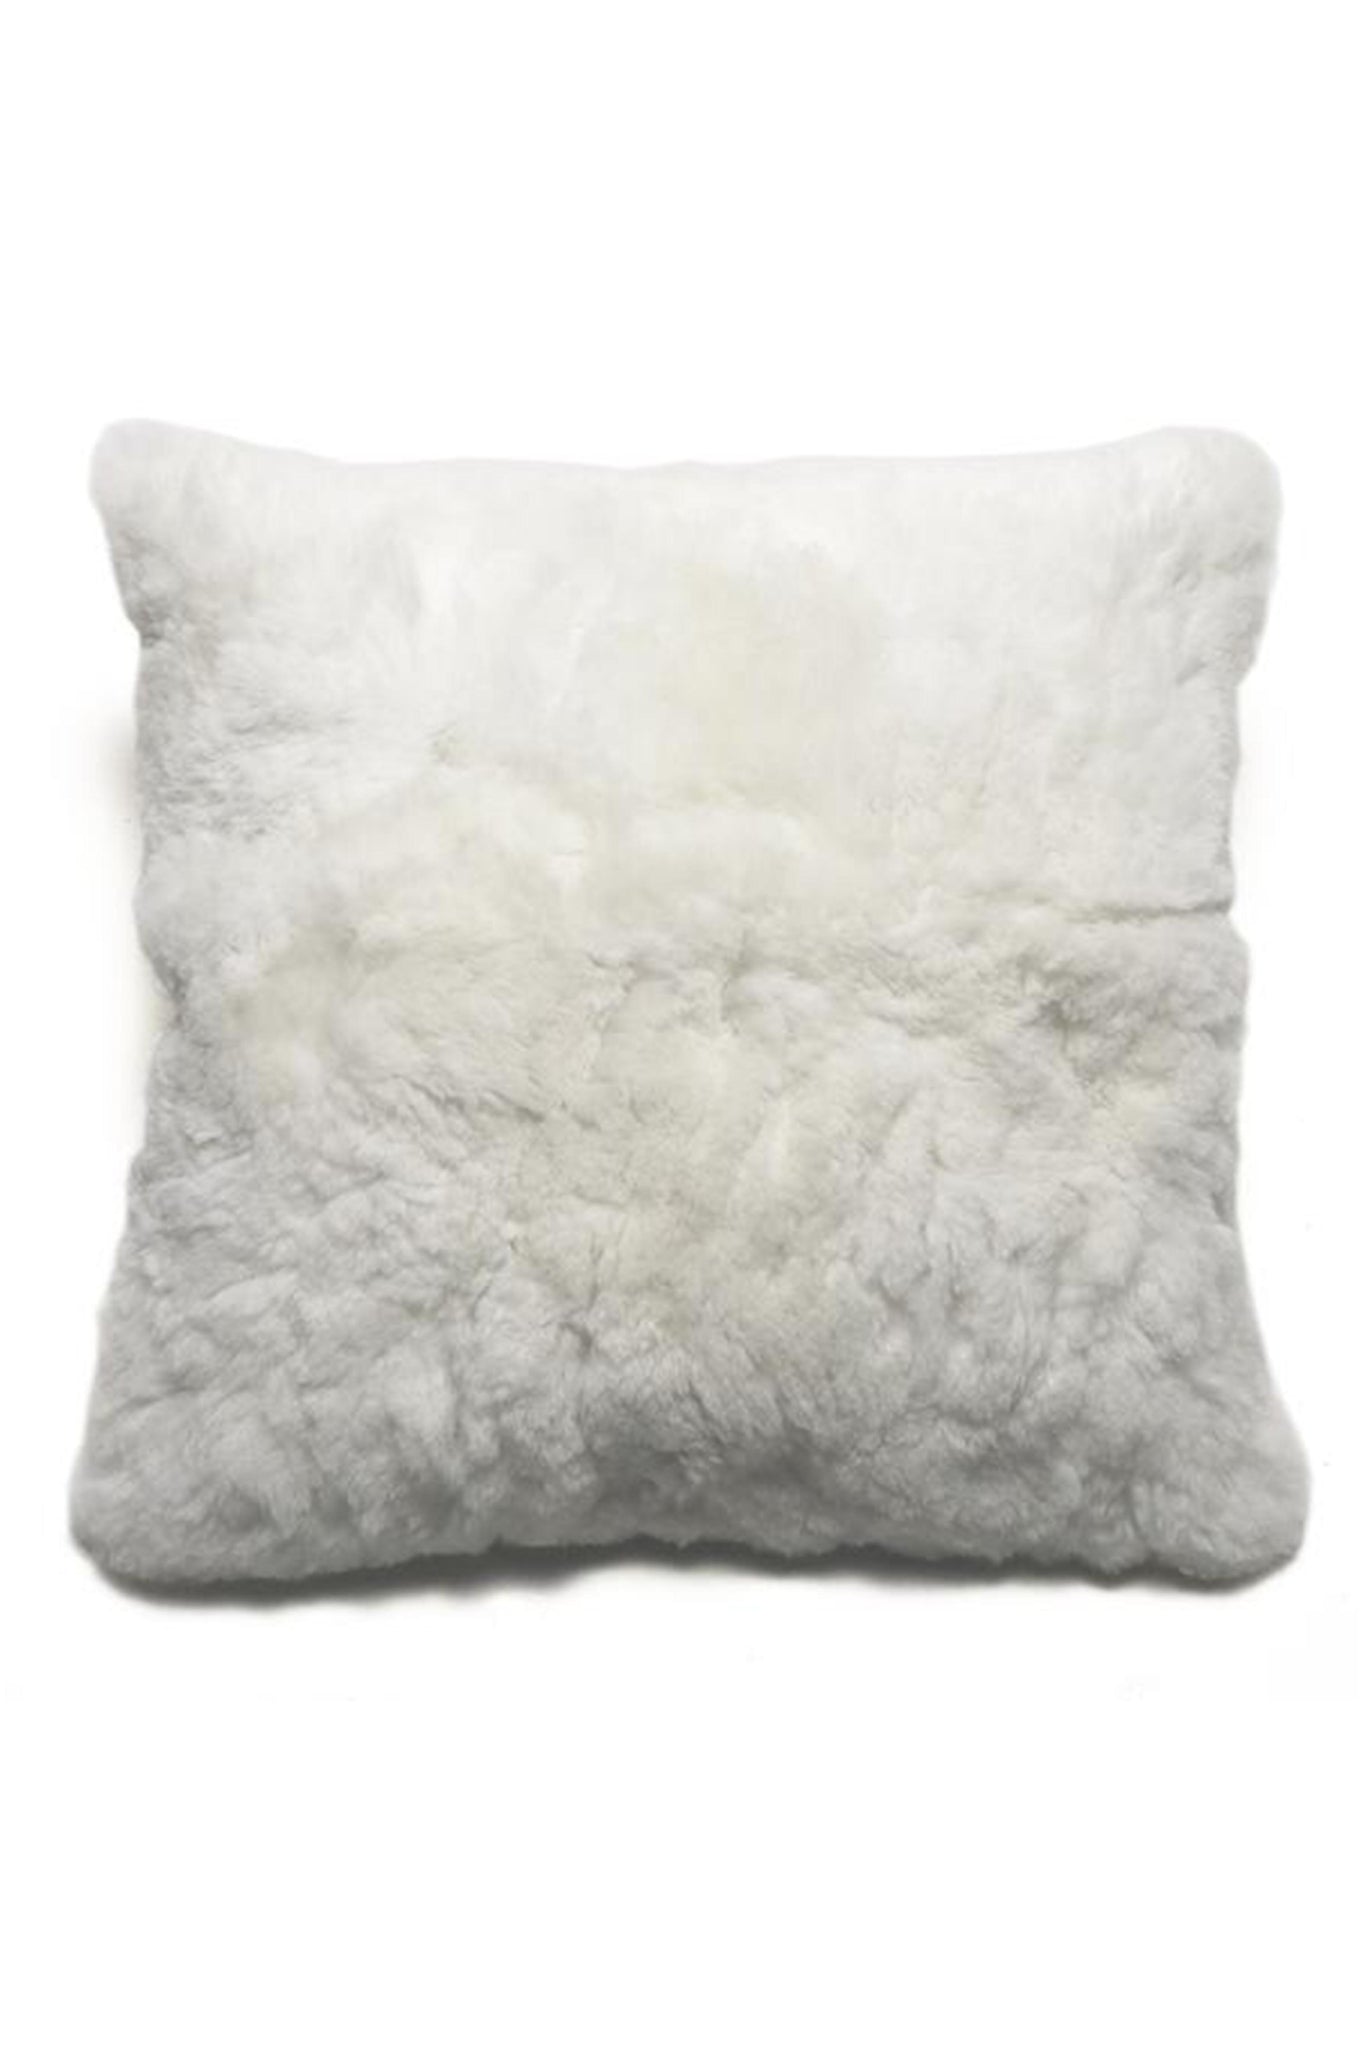 White alpaca pillow